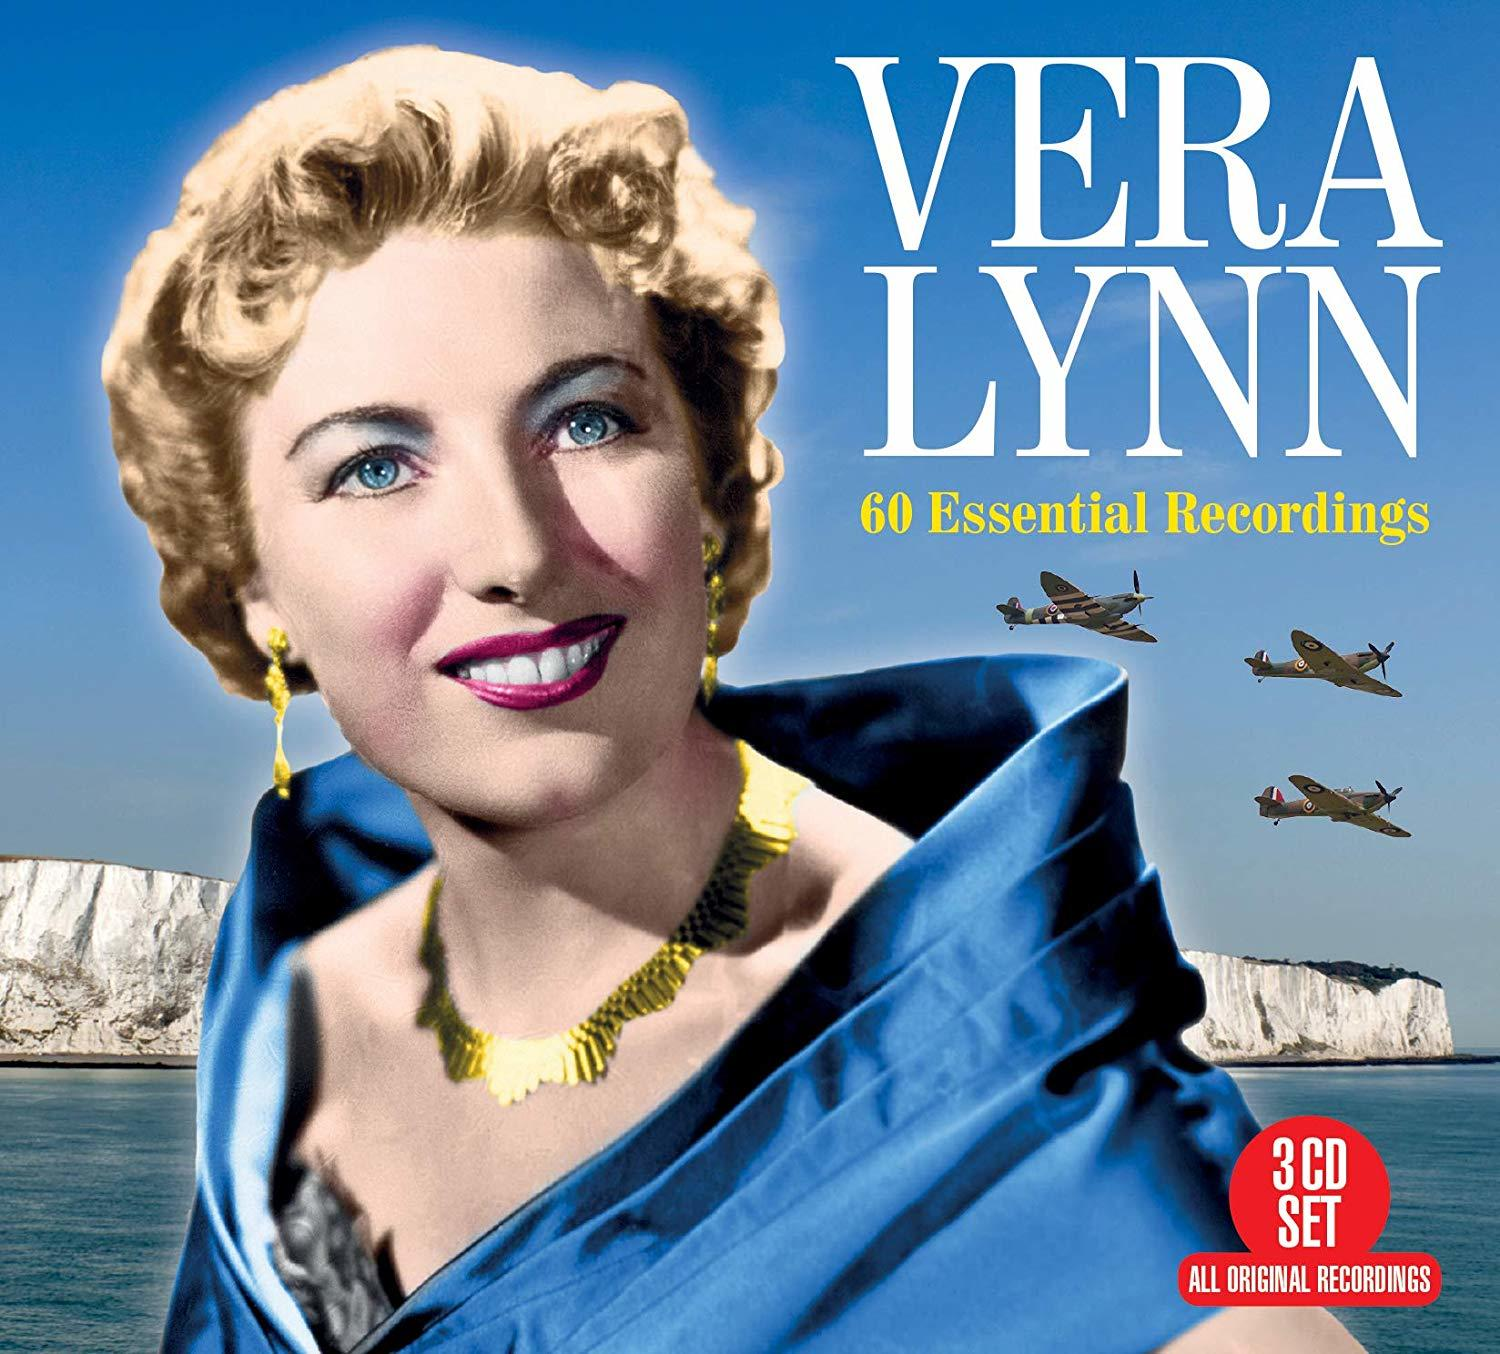 (CD) ESSENTIAL Lynn 60 - - Vera RECORDINGS